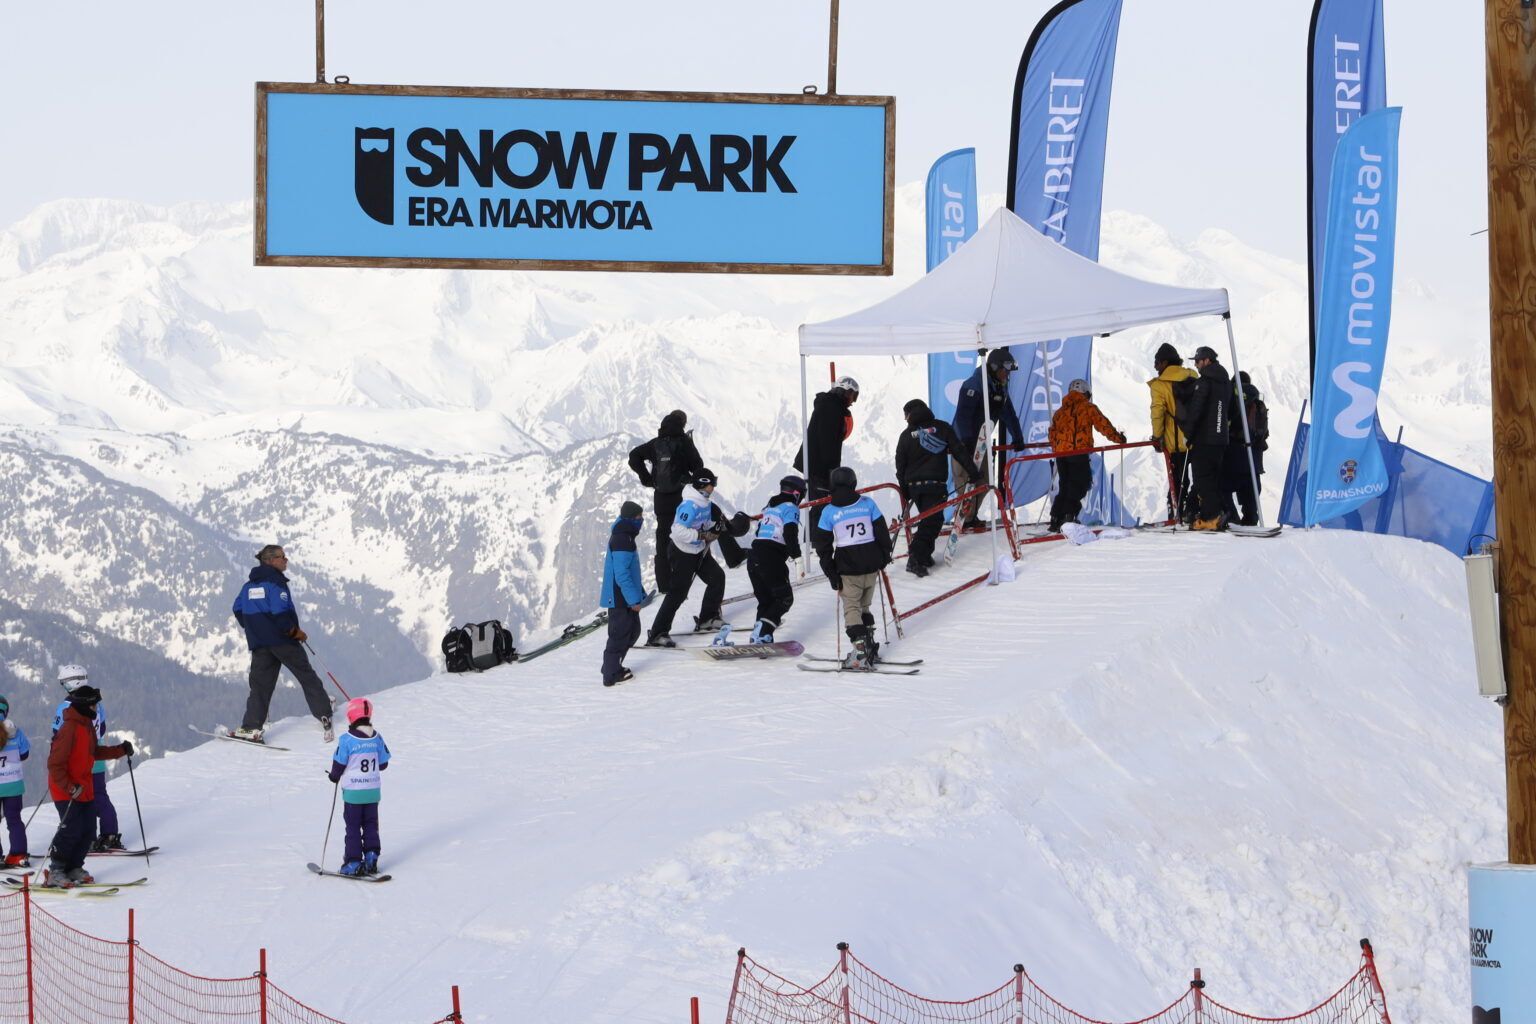 Snowpark Era Marmota de Baqueira beret